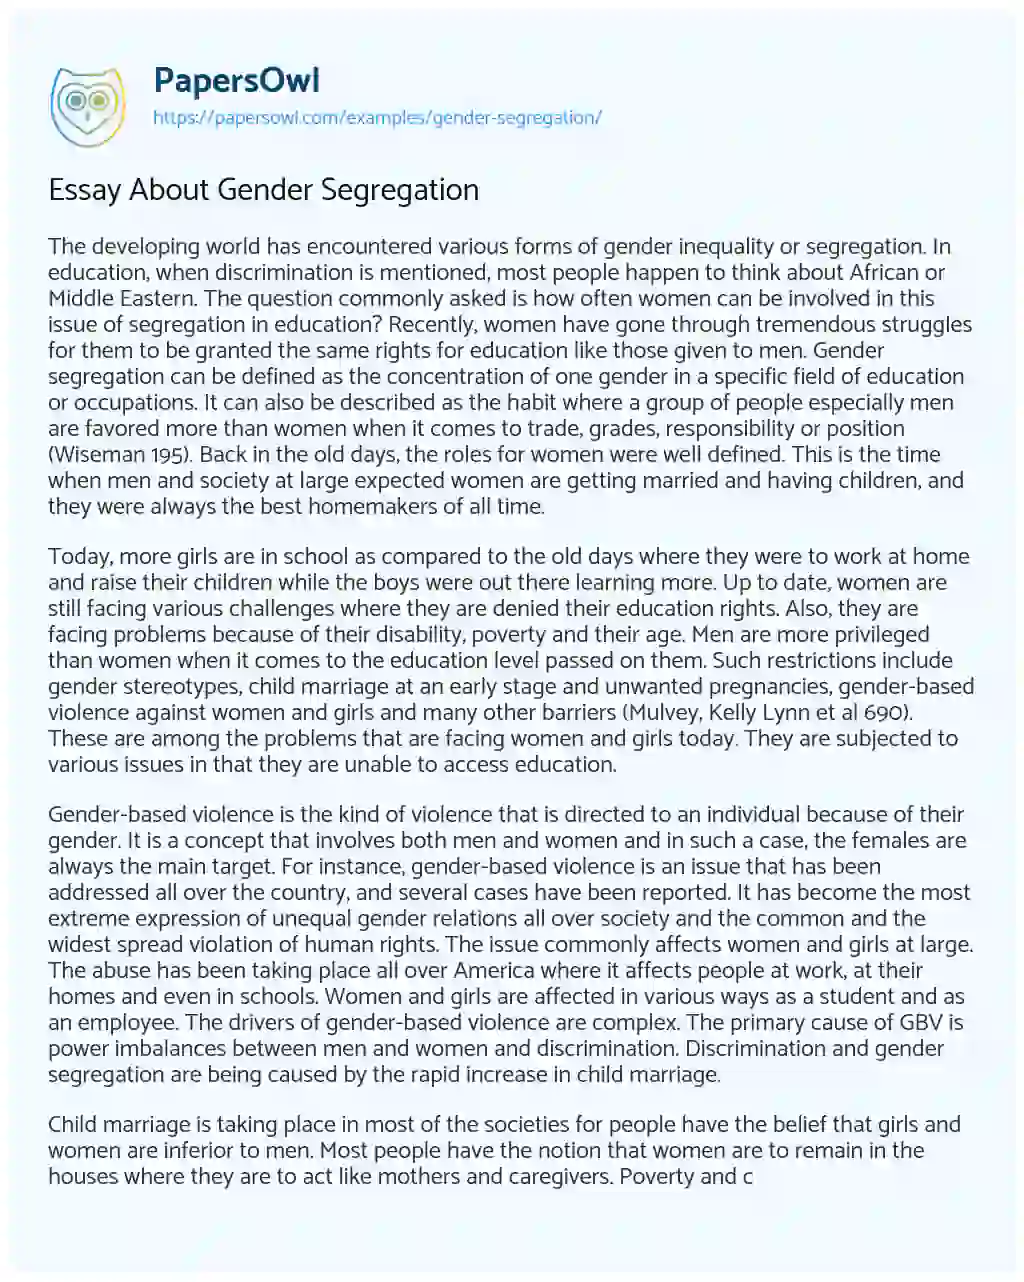 Essay on Essay about Gender Segregation